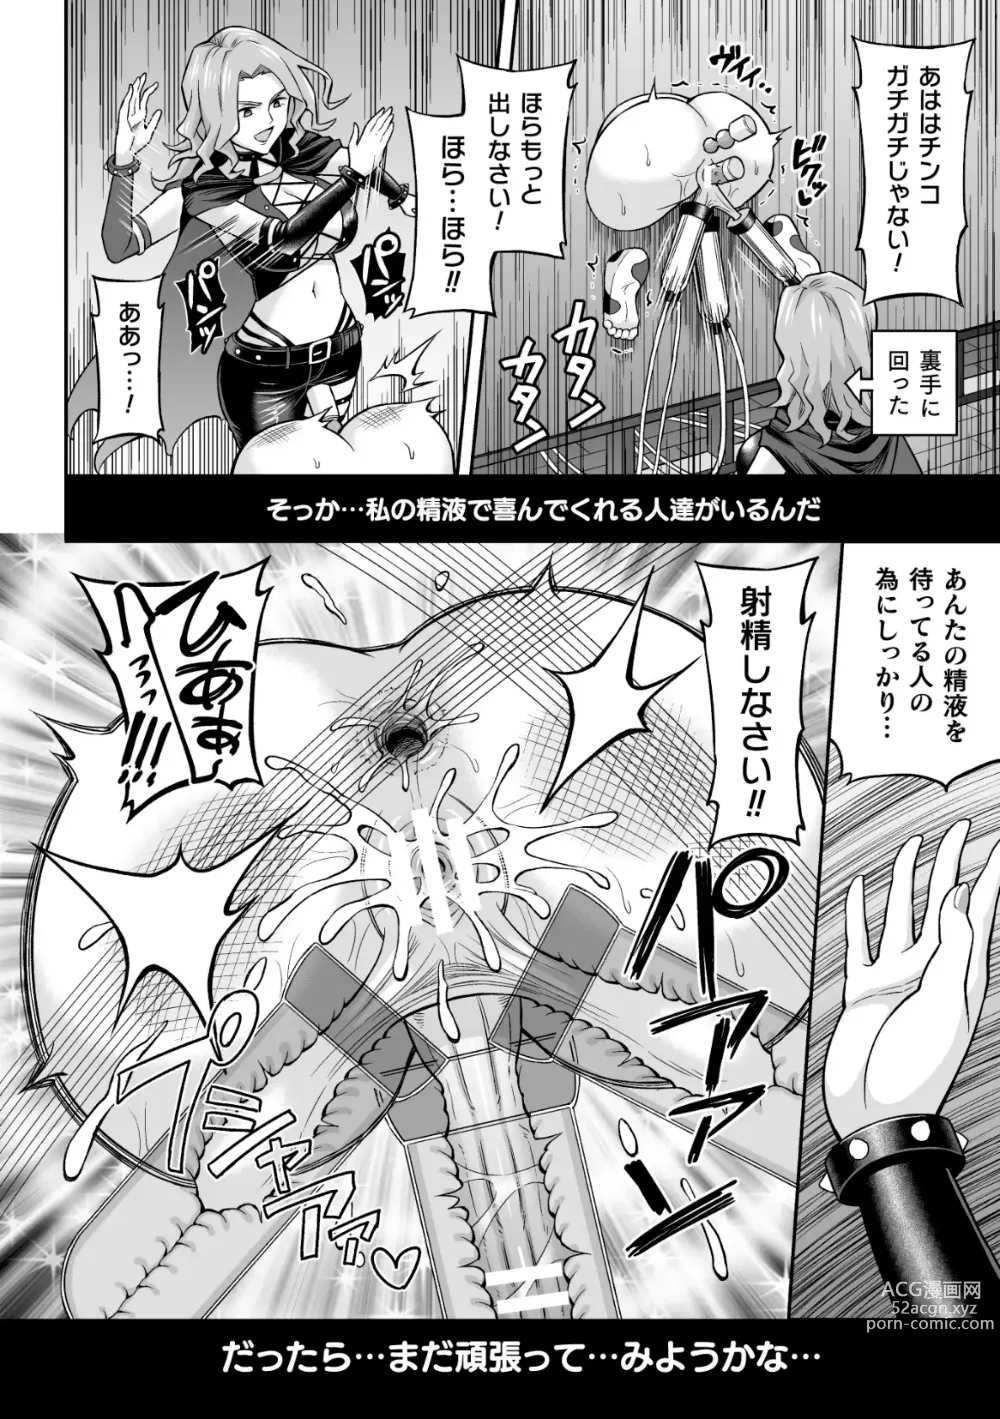 Page 36 of manga 2D Comic Magazine Futanari Kabe Sao Kabe Shiri Futanari Heroine Sakusei Iki Jigoku! Vol. 1